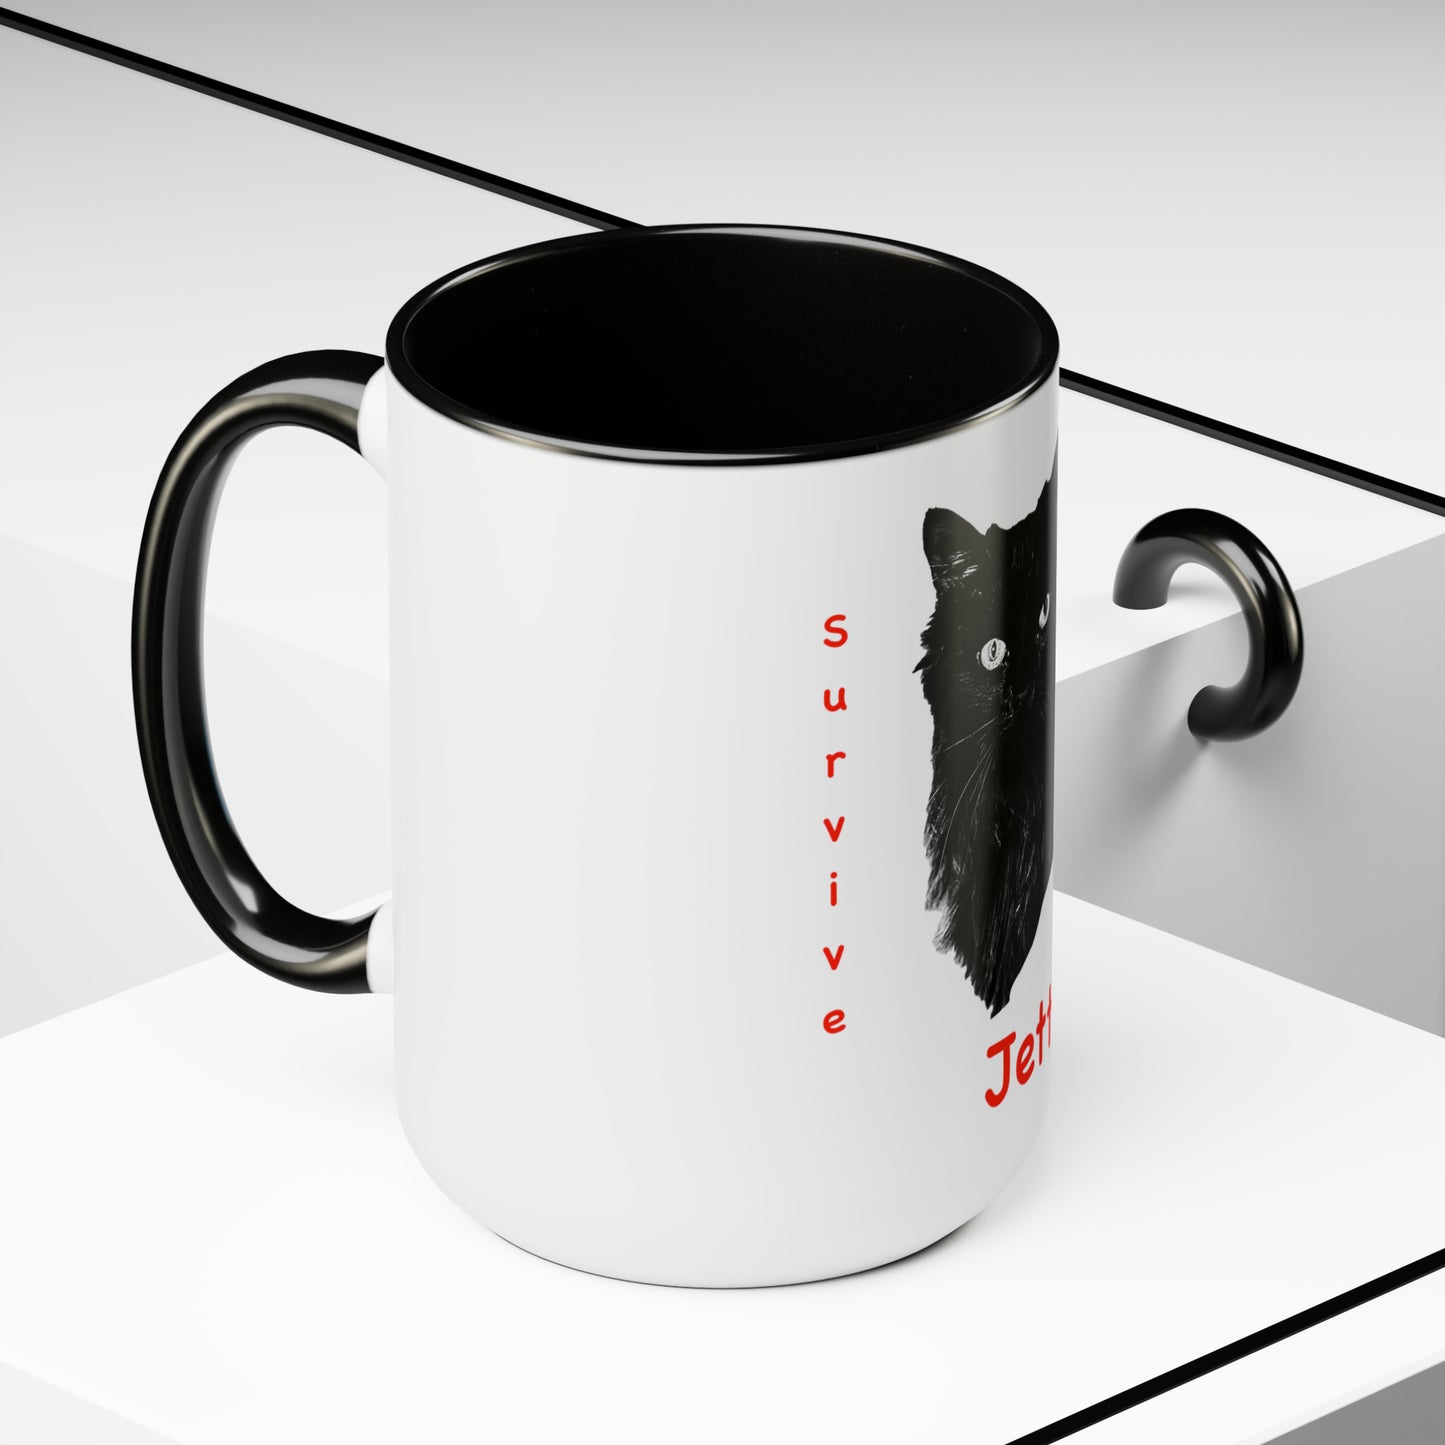 Jett Two-Tone Coffee Mug, 15oz